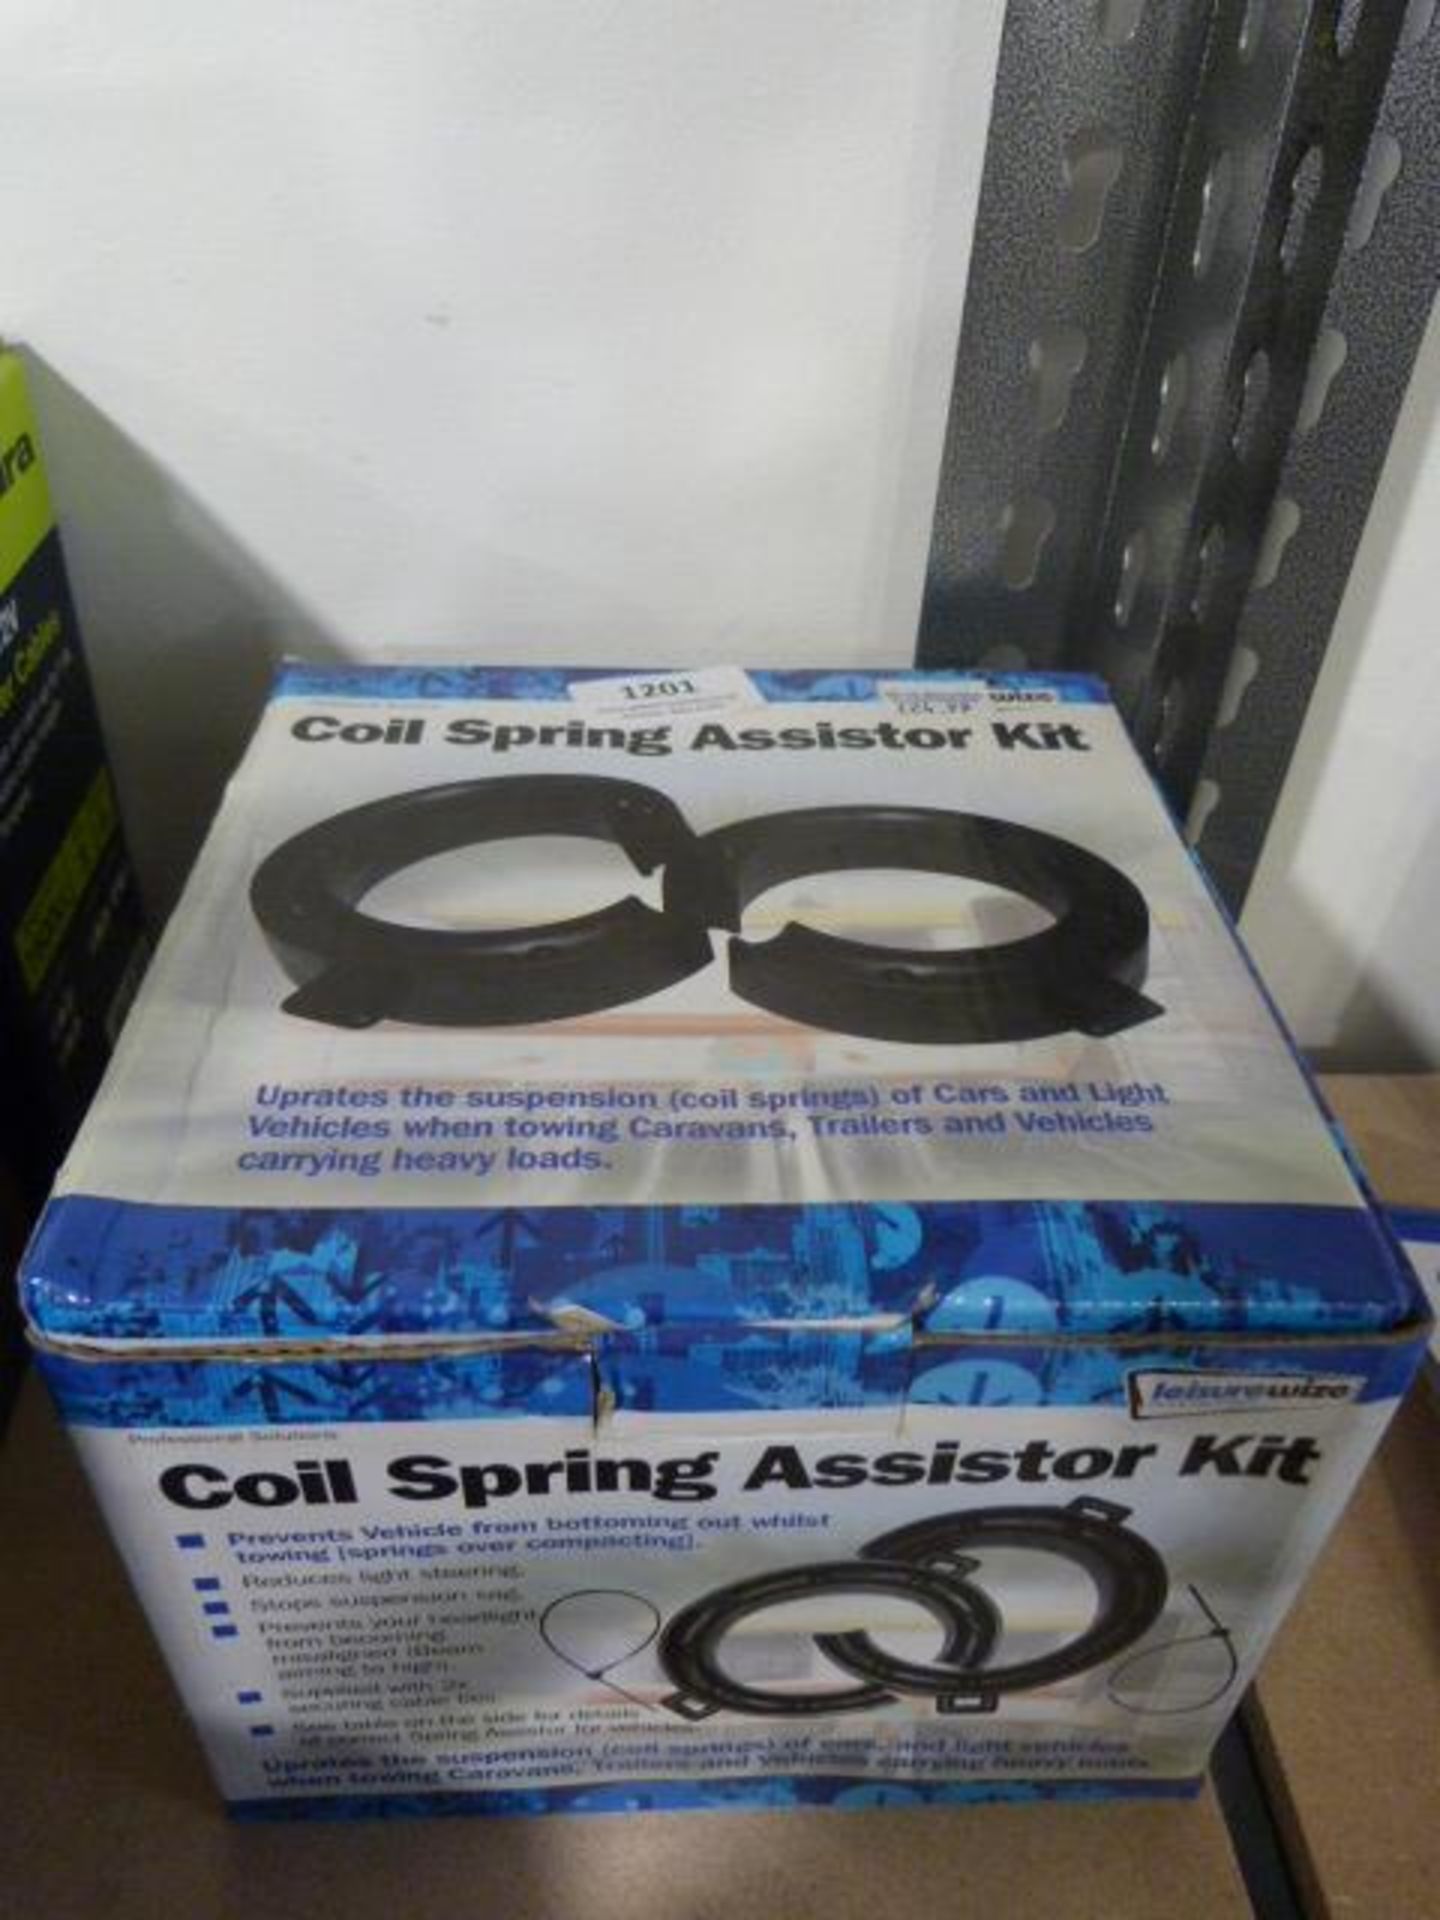 *Coil Spring Assister Kit